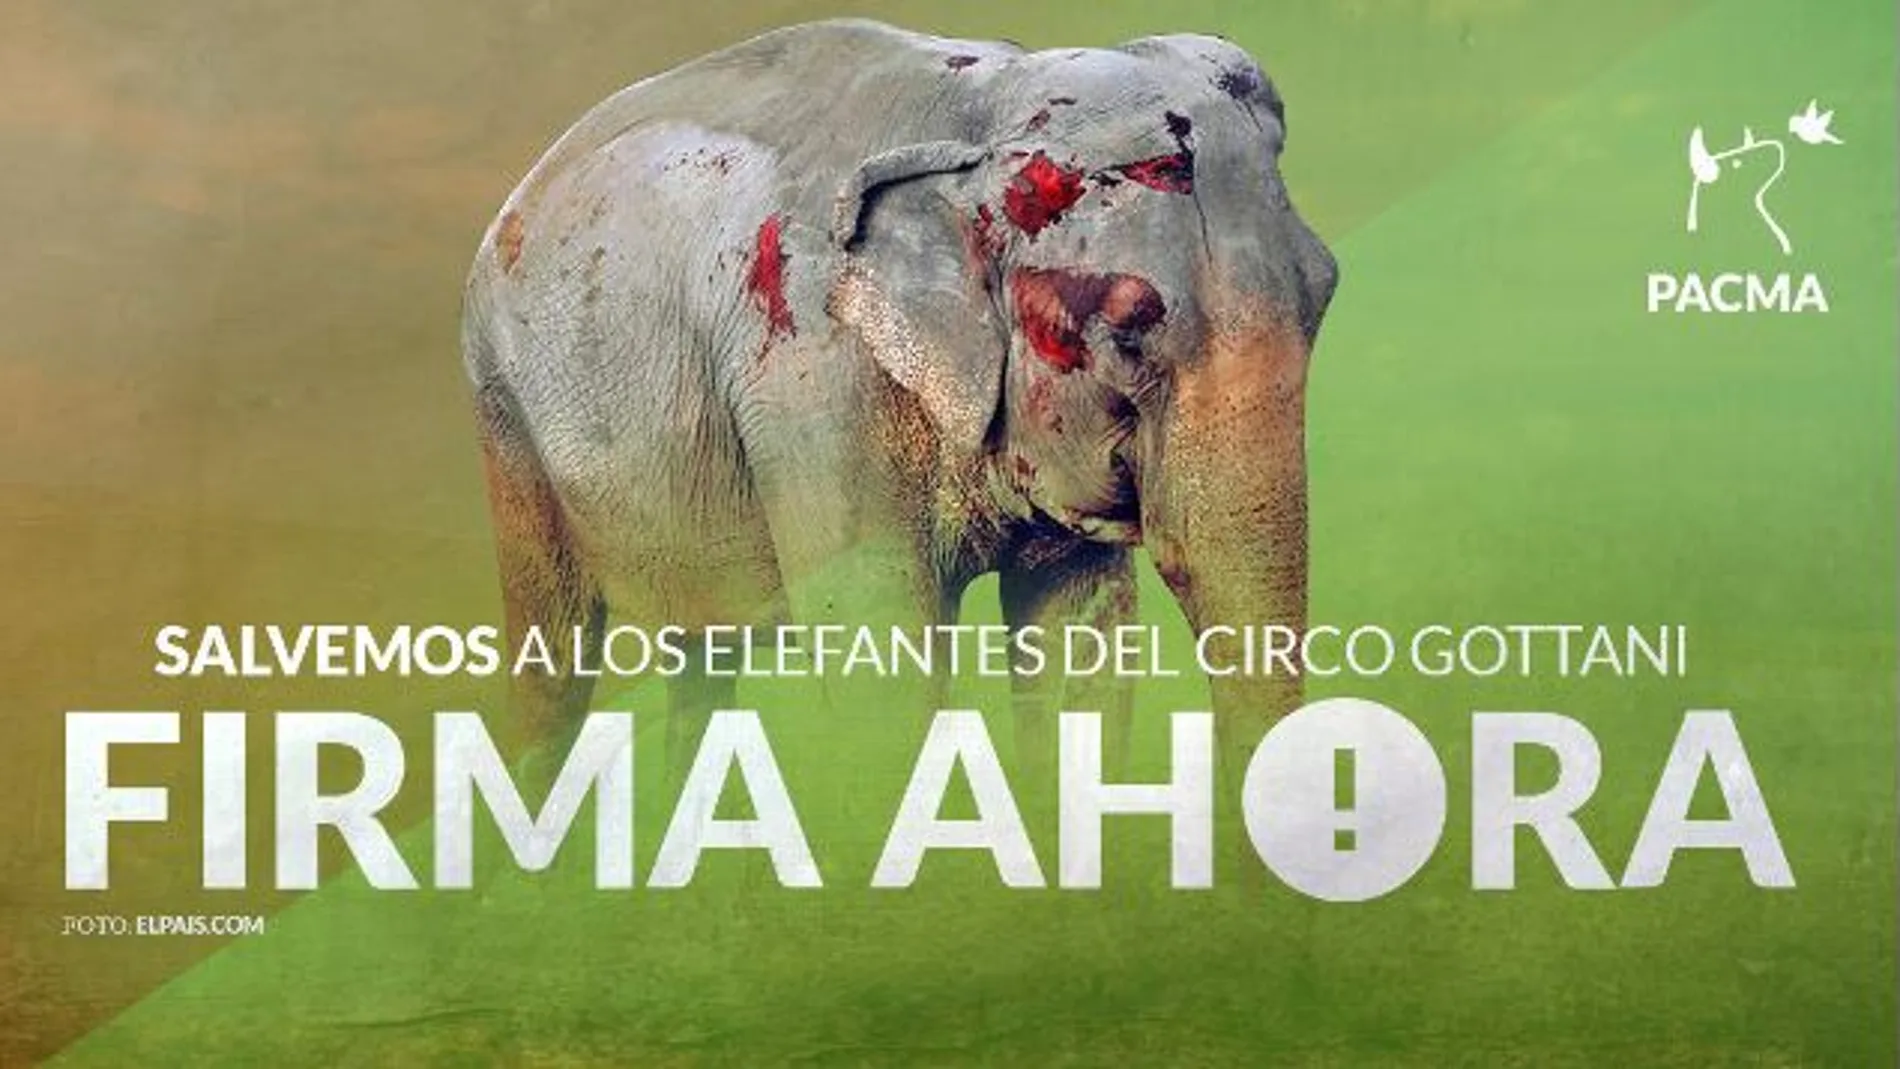 Cartel de la refcogida de firmas para la liberación de los elefantes del Circo Gottani